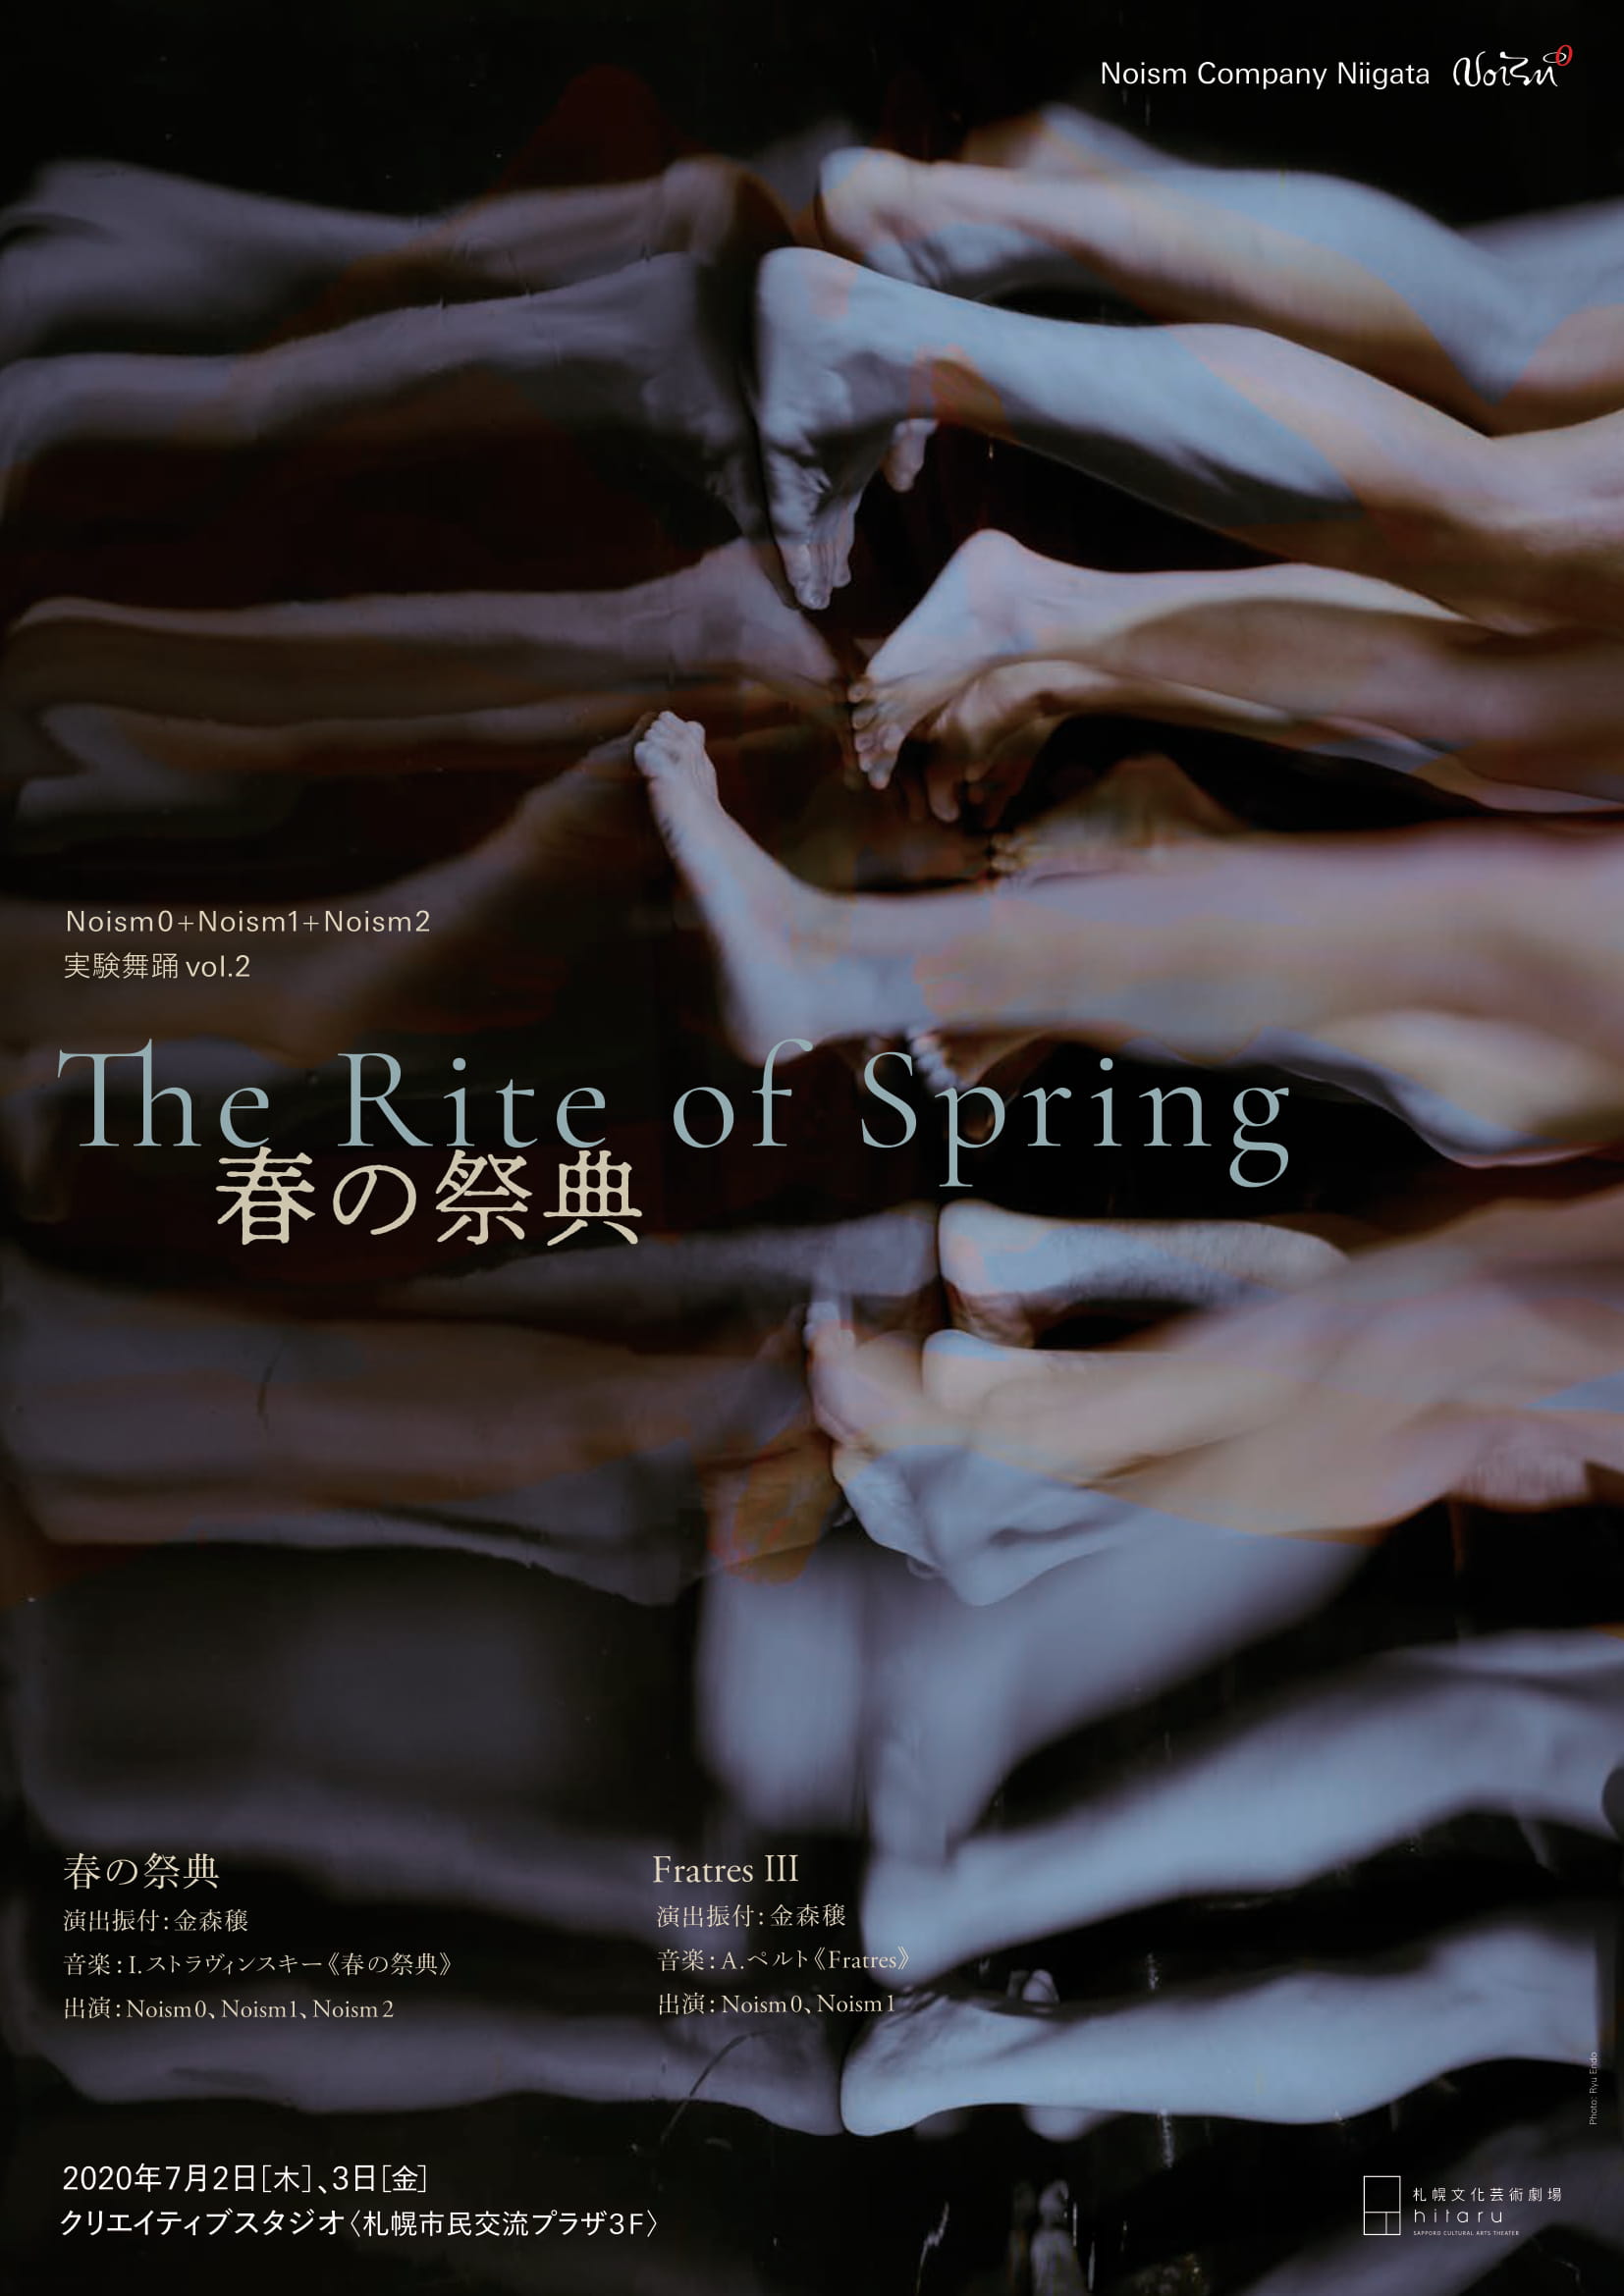 【公演中止】 クリエイティブスタジオ Noism Company Niigata 実験舞踊vol.2「春の祭典」/「FratresⅢ」イメージ